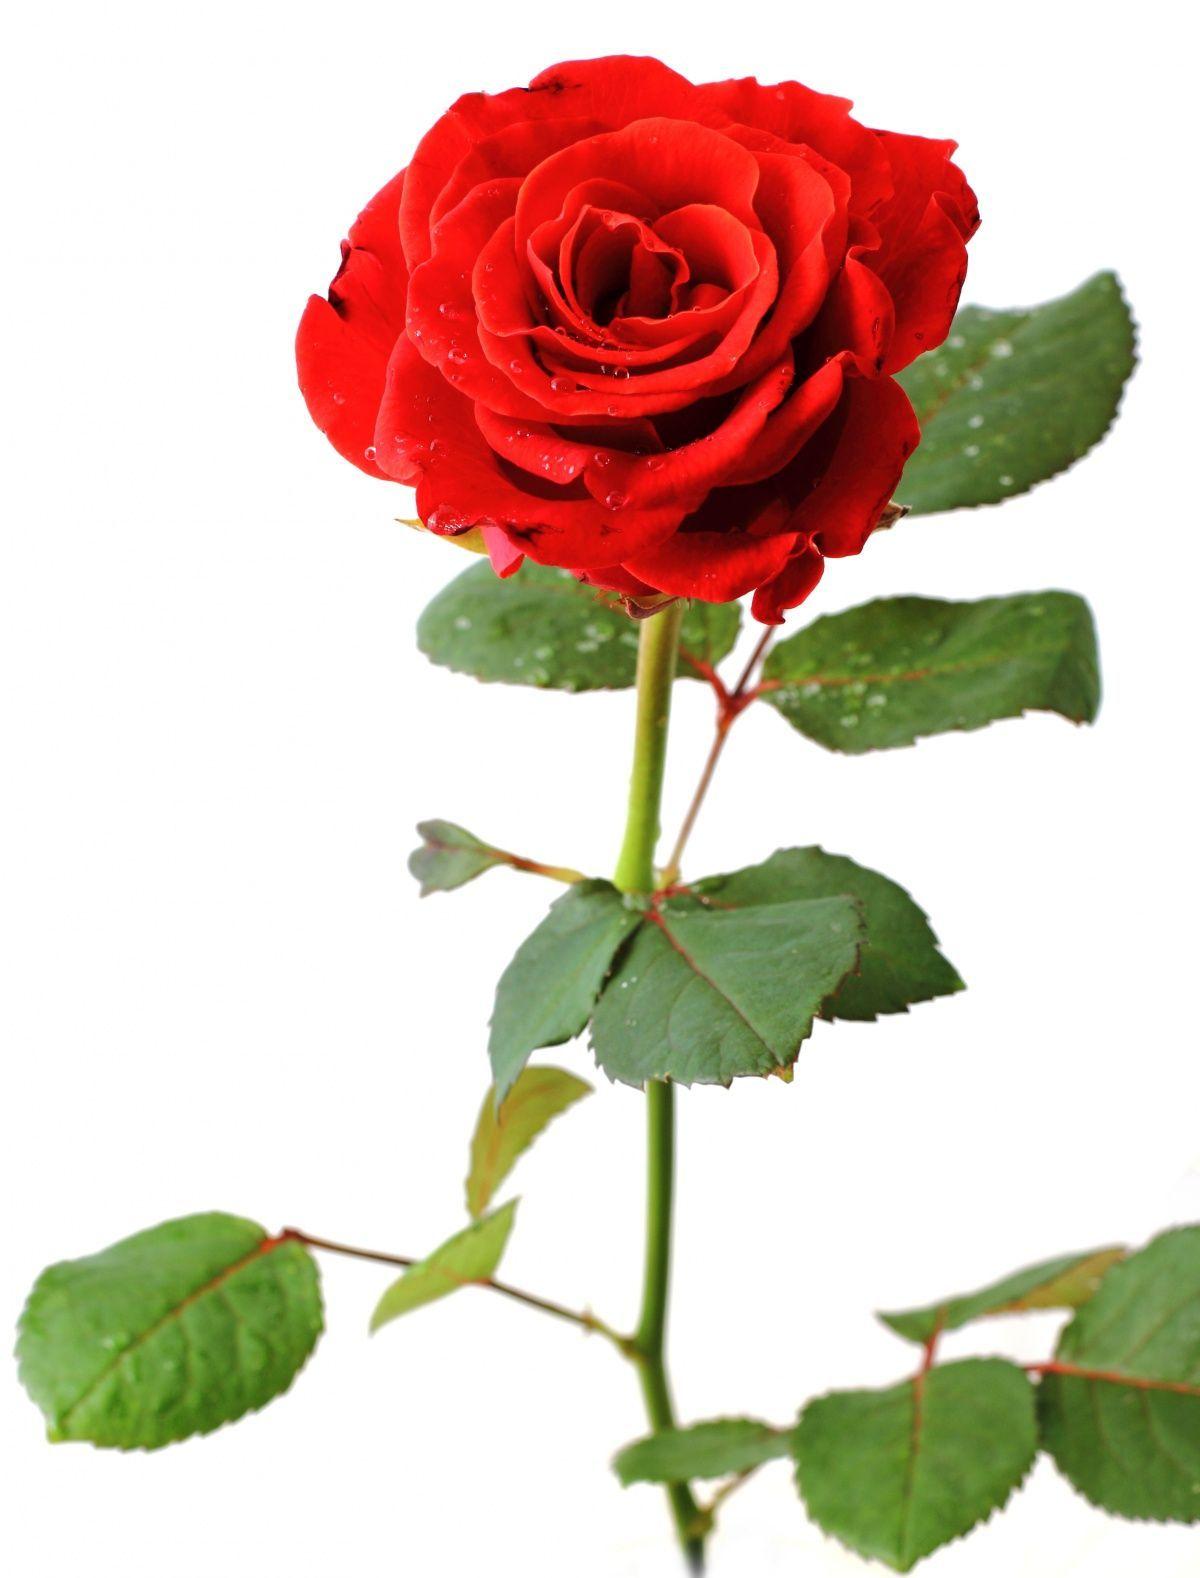 Rose on white background photo. Image № 17028